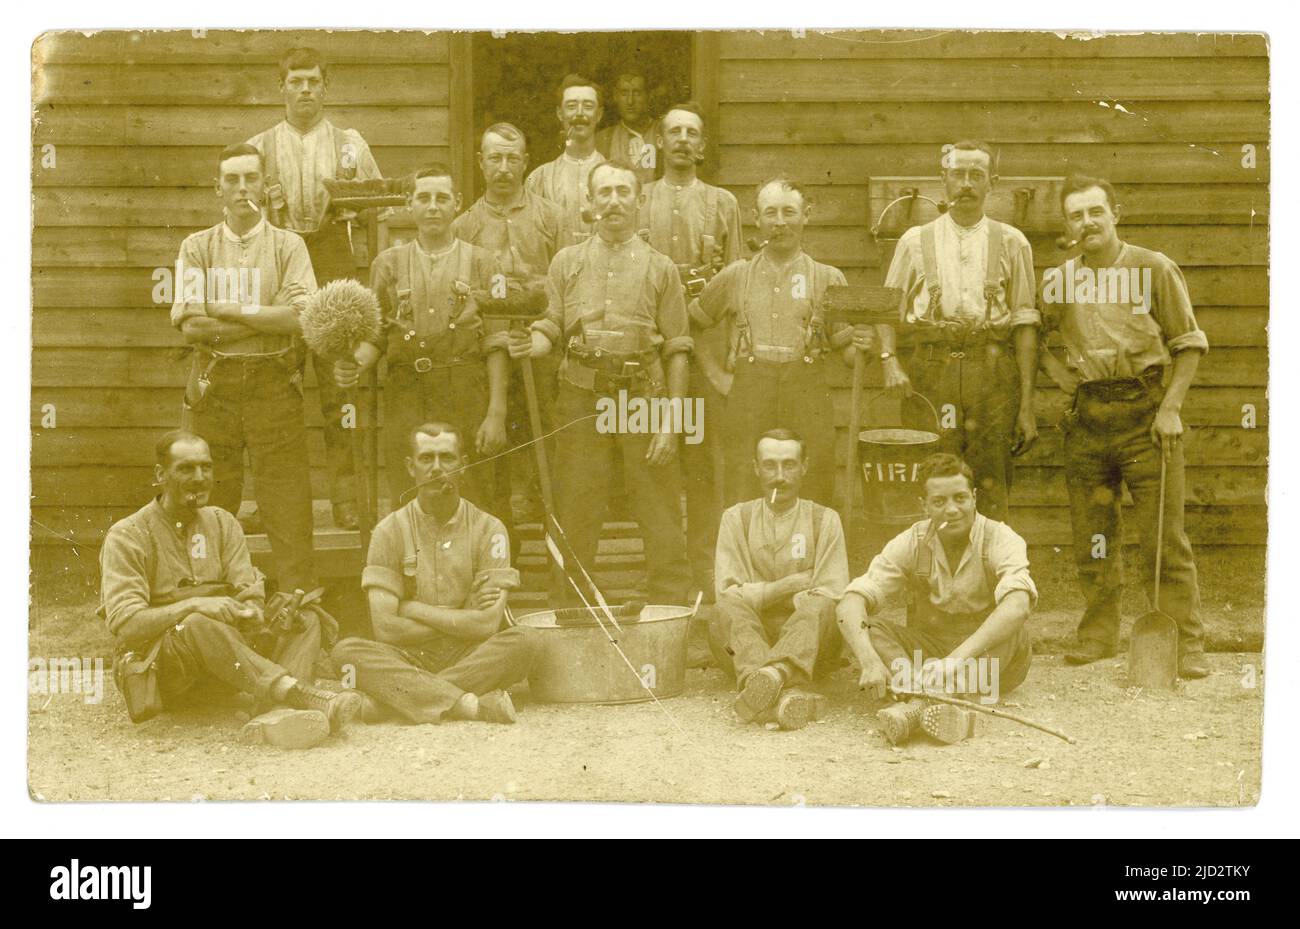 Carte postale originale de WW1 ans des soldats sur les tâches de nettoyage à l'extérieur d'une cabane, brosses, balai, pelle, bain en étain, seau de feu, l'homme a la cantine de l'armée sur la ceinture. Peut-être l'équipage de feu. À leur caserne de l'armée .UK Banque D'Images